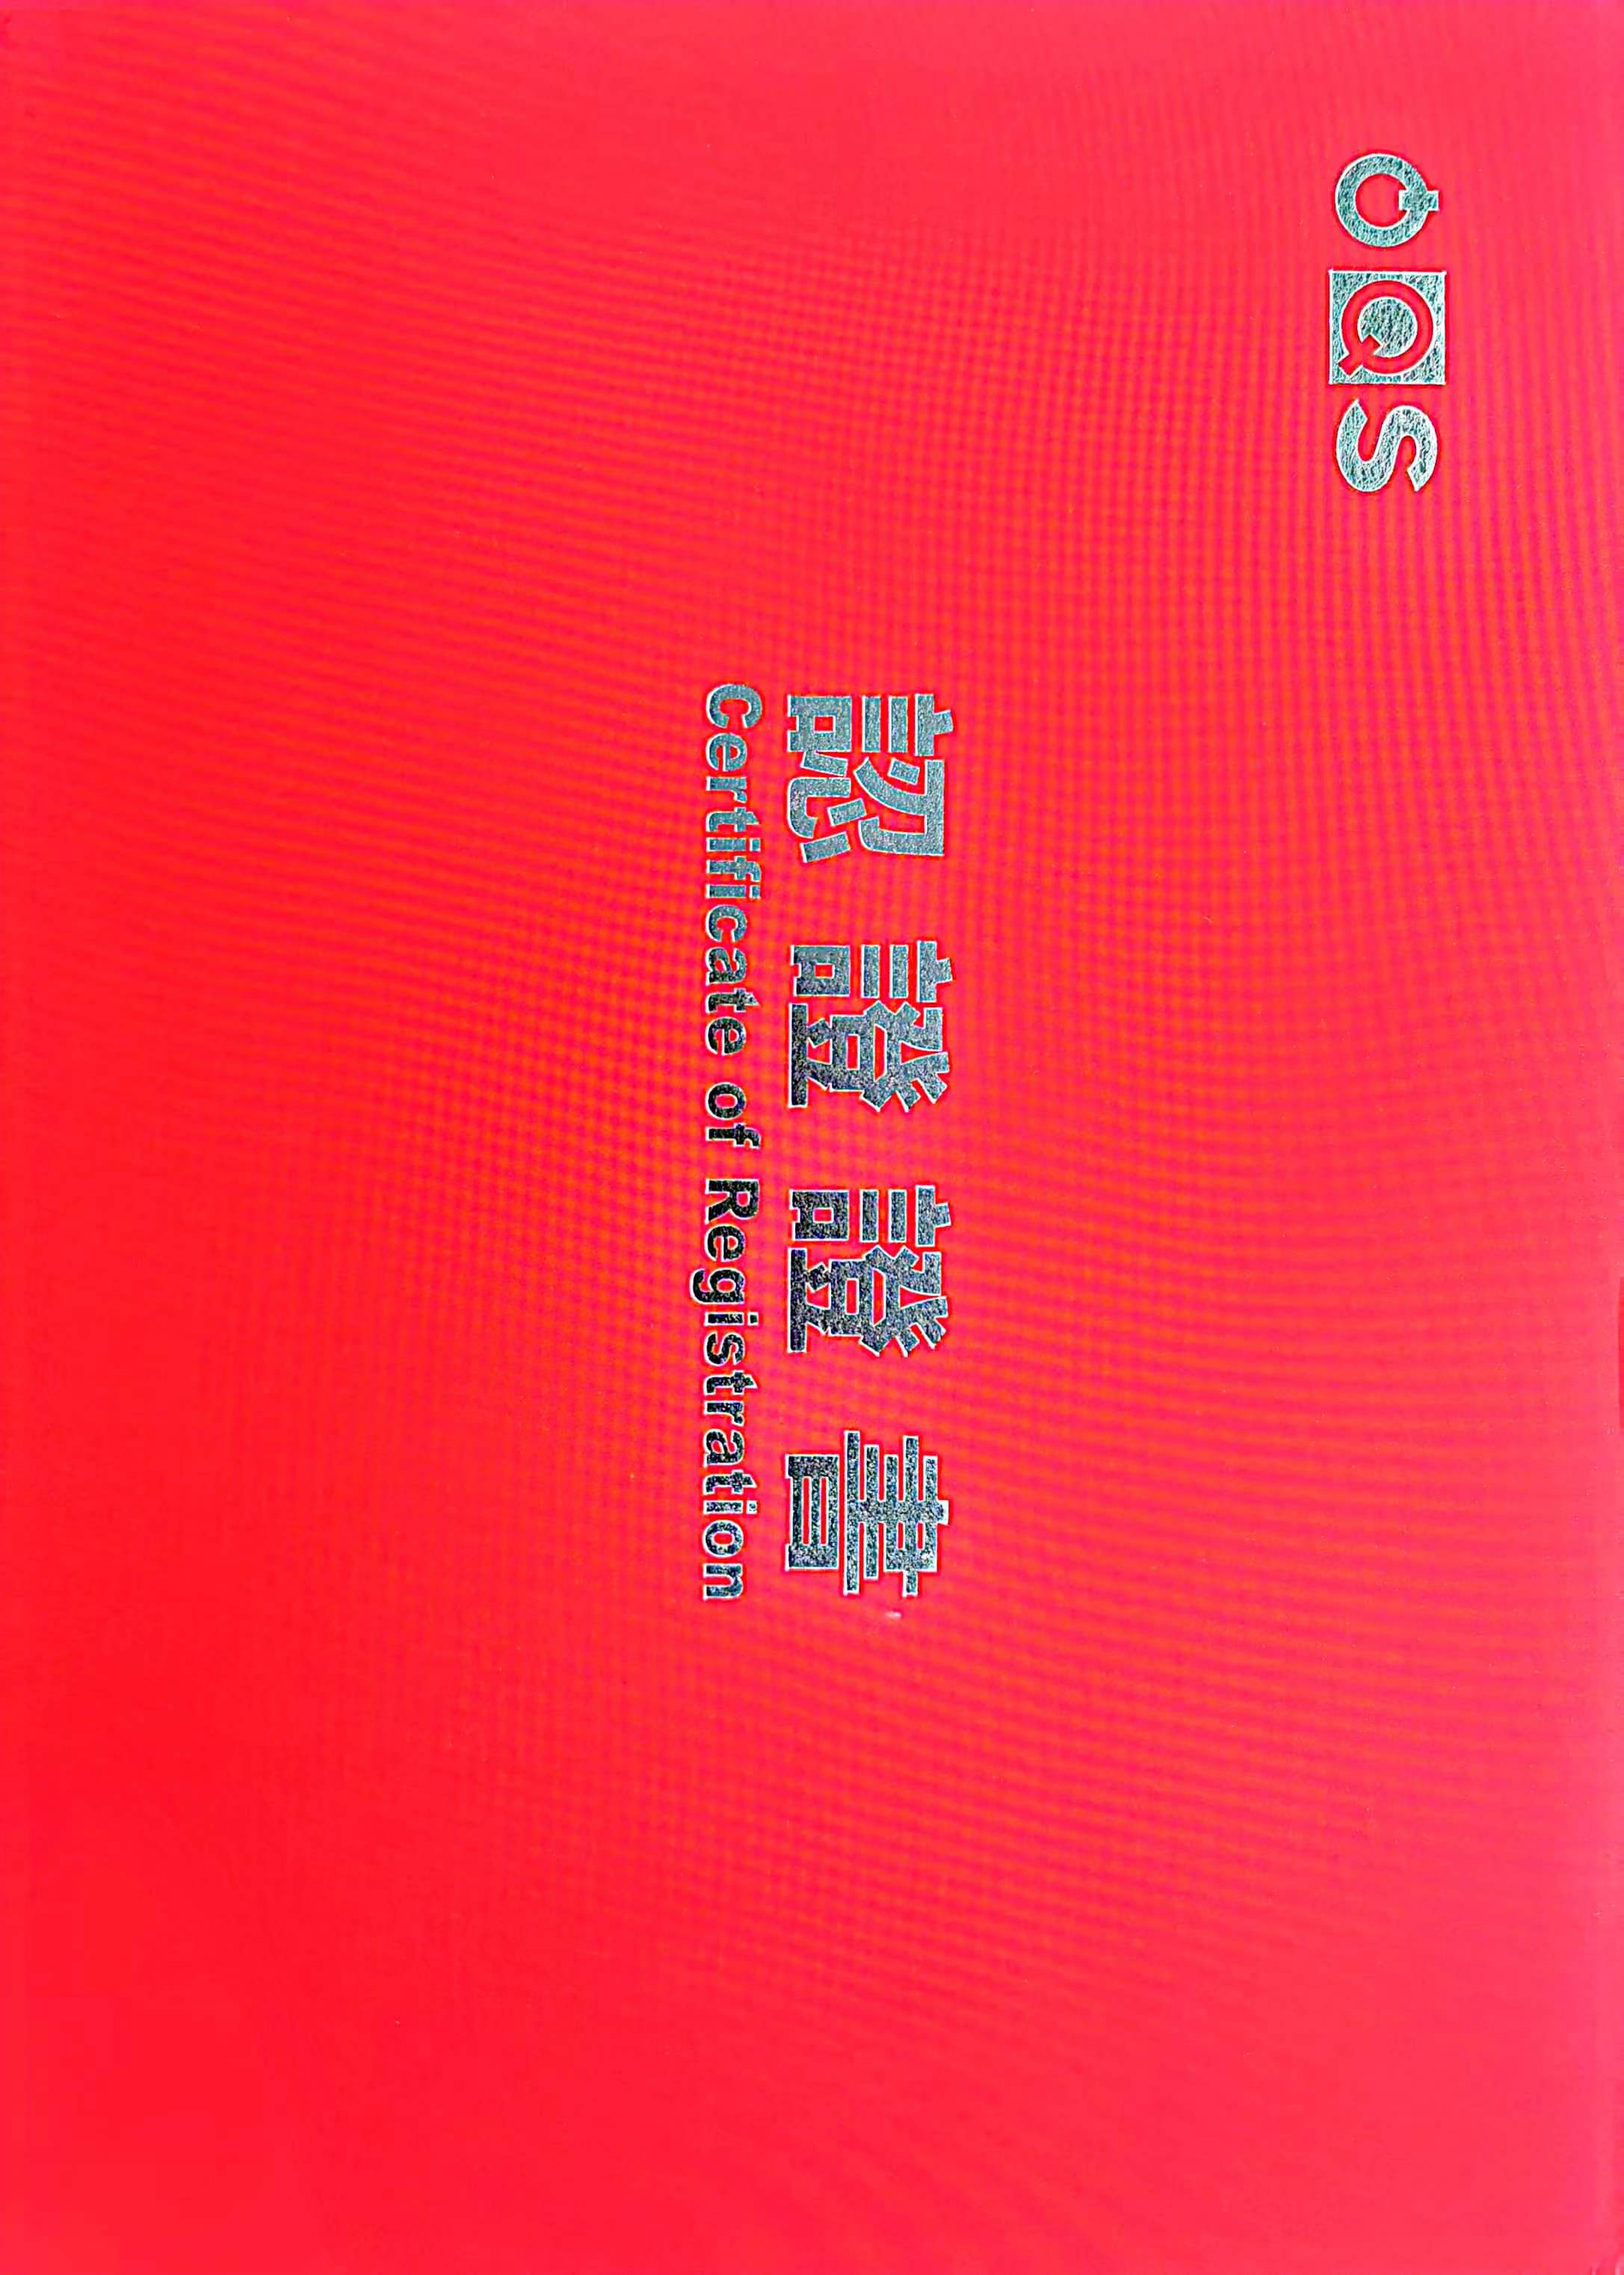 Ang Hebei Qiangsheng Machinery Parts Co., Ltd. ay nakapasa sa sertipikasyon ng IATF19649.